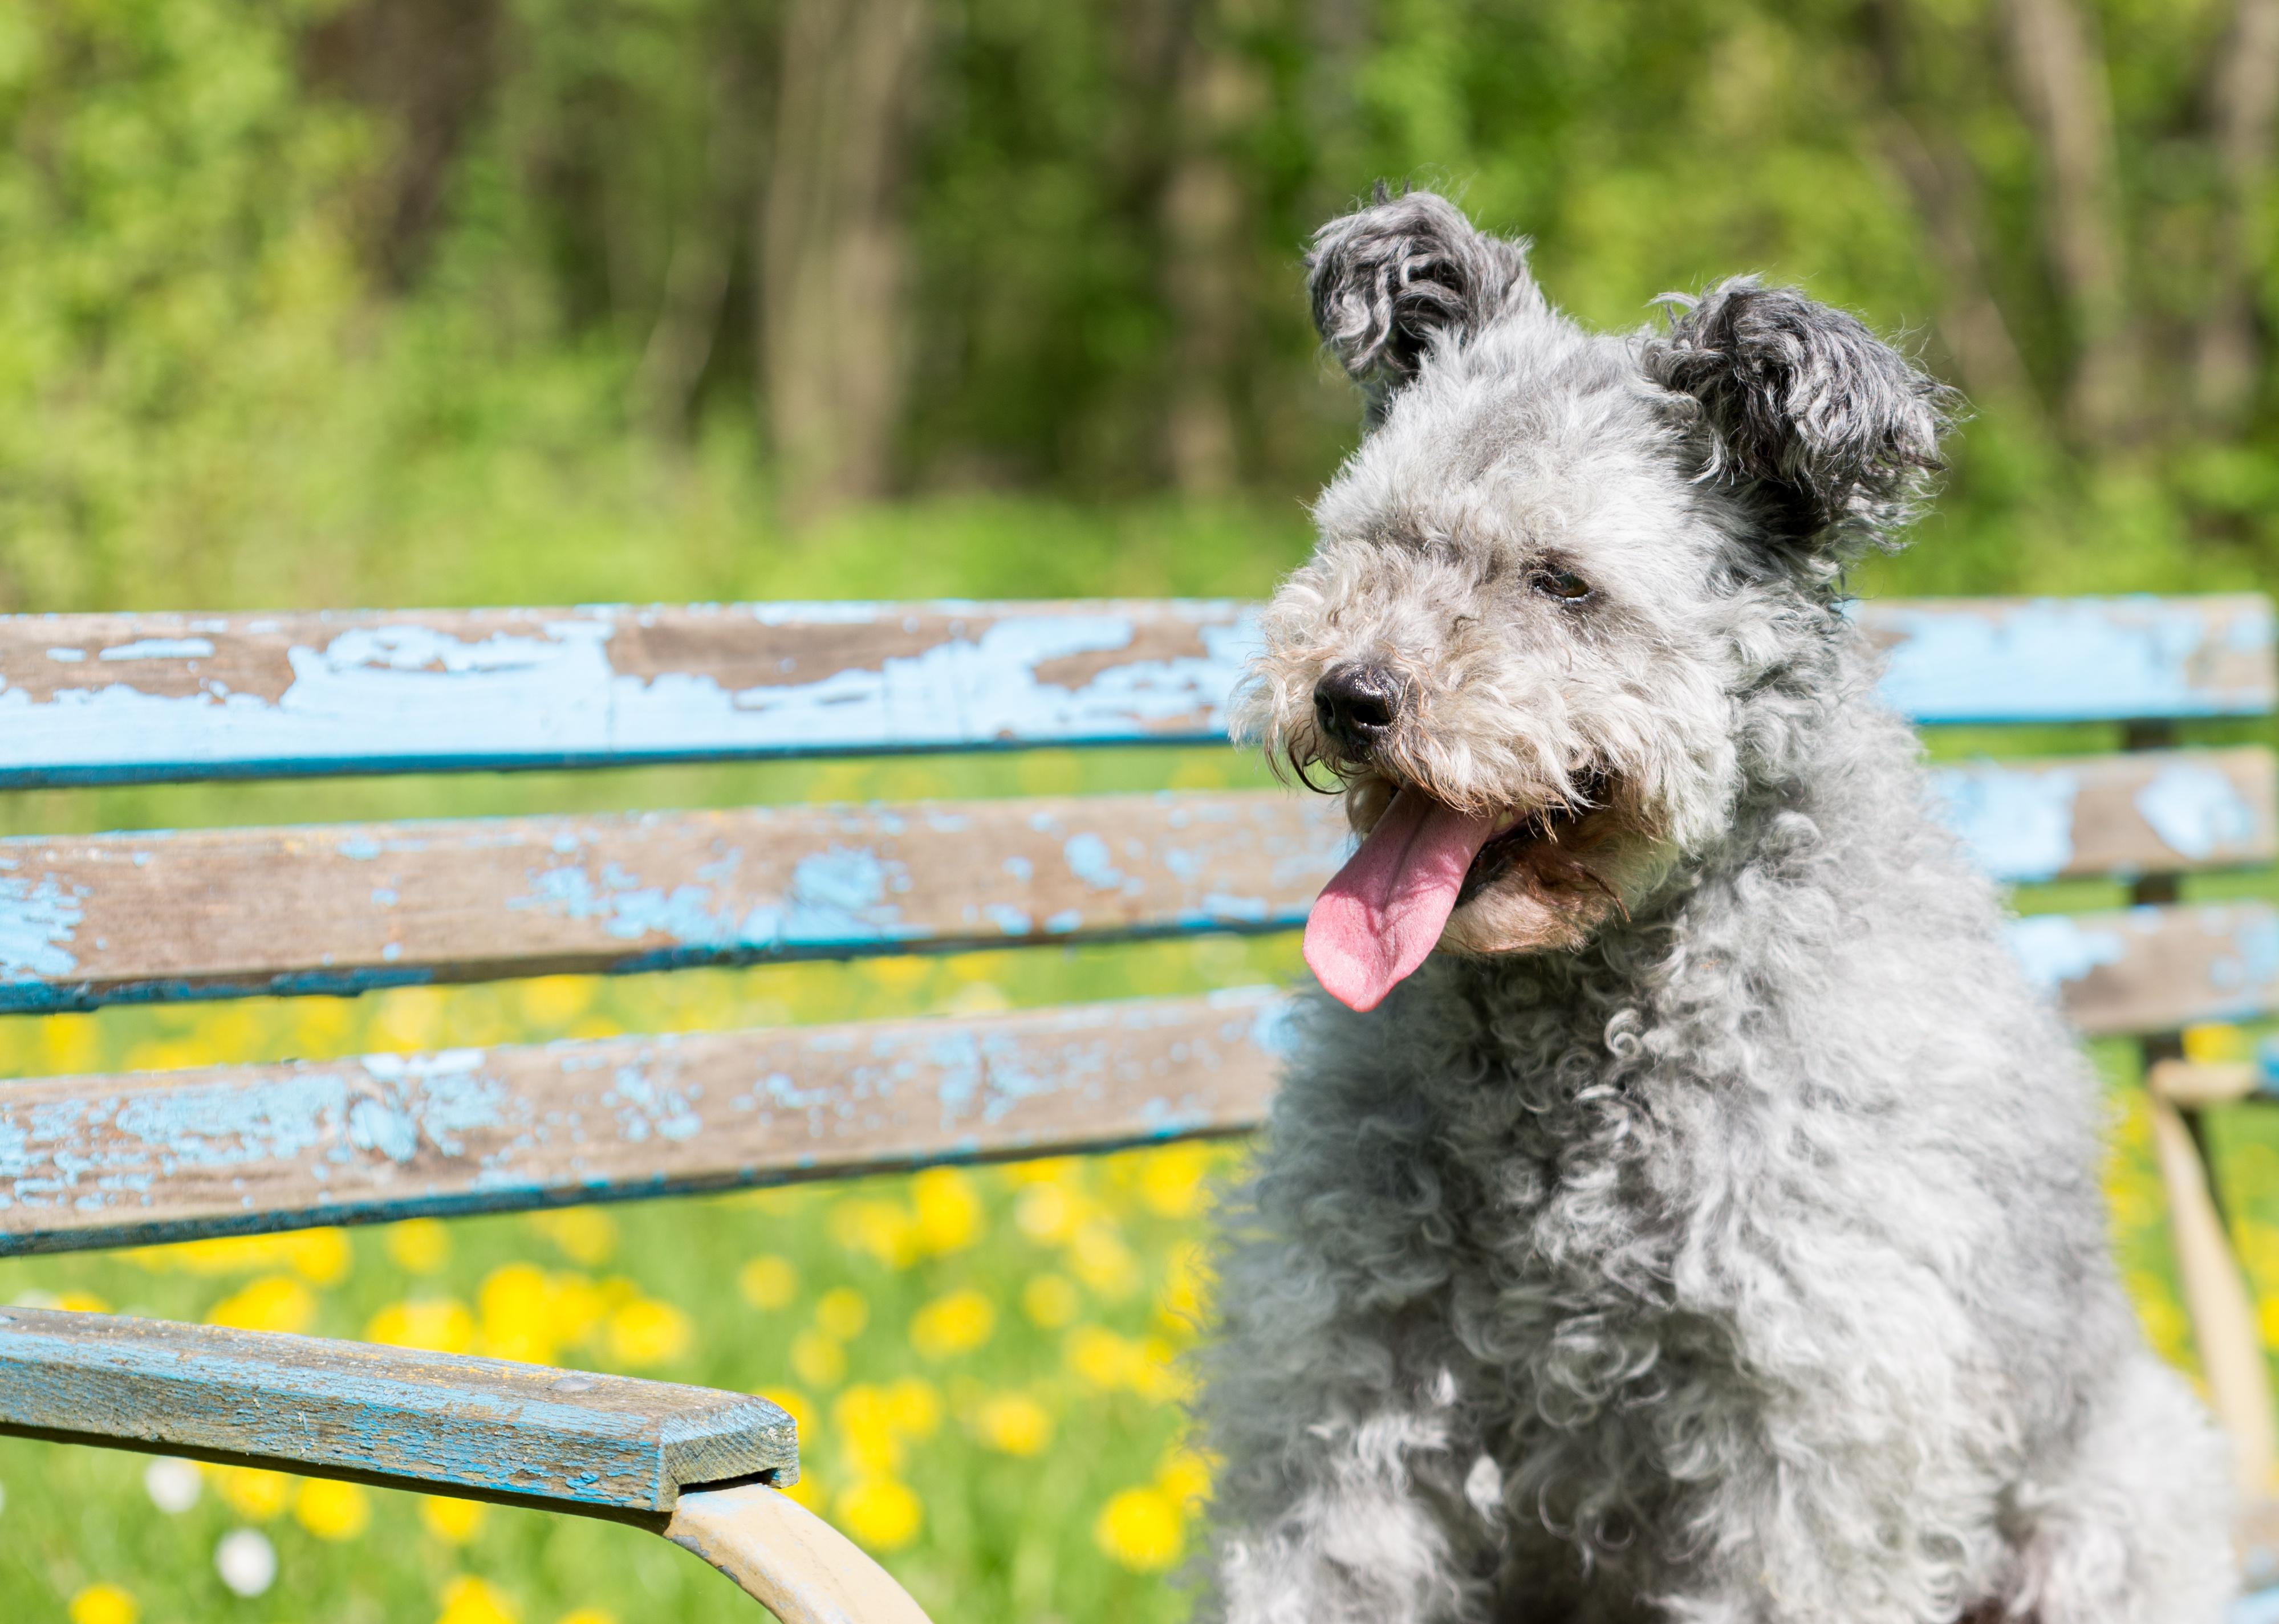 Pumi dog sitting on a bench.